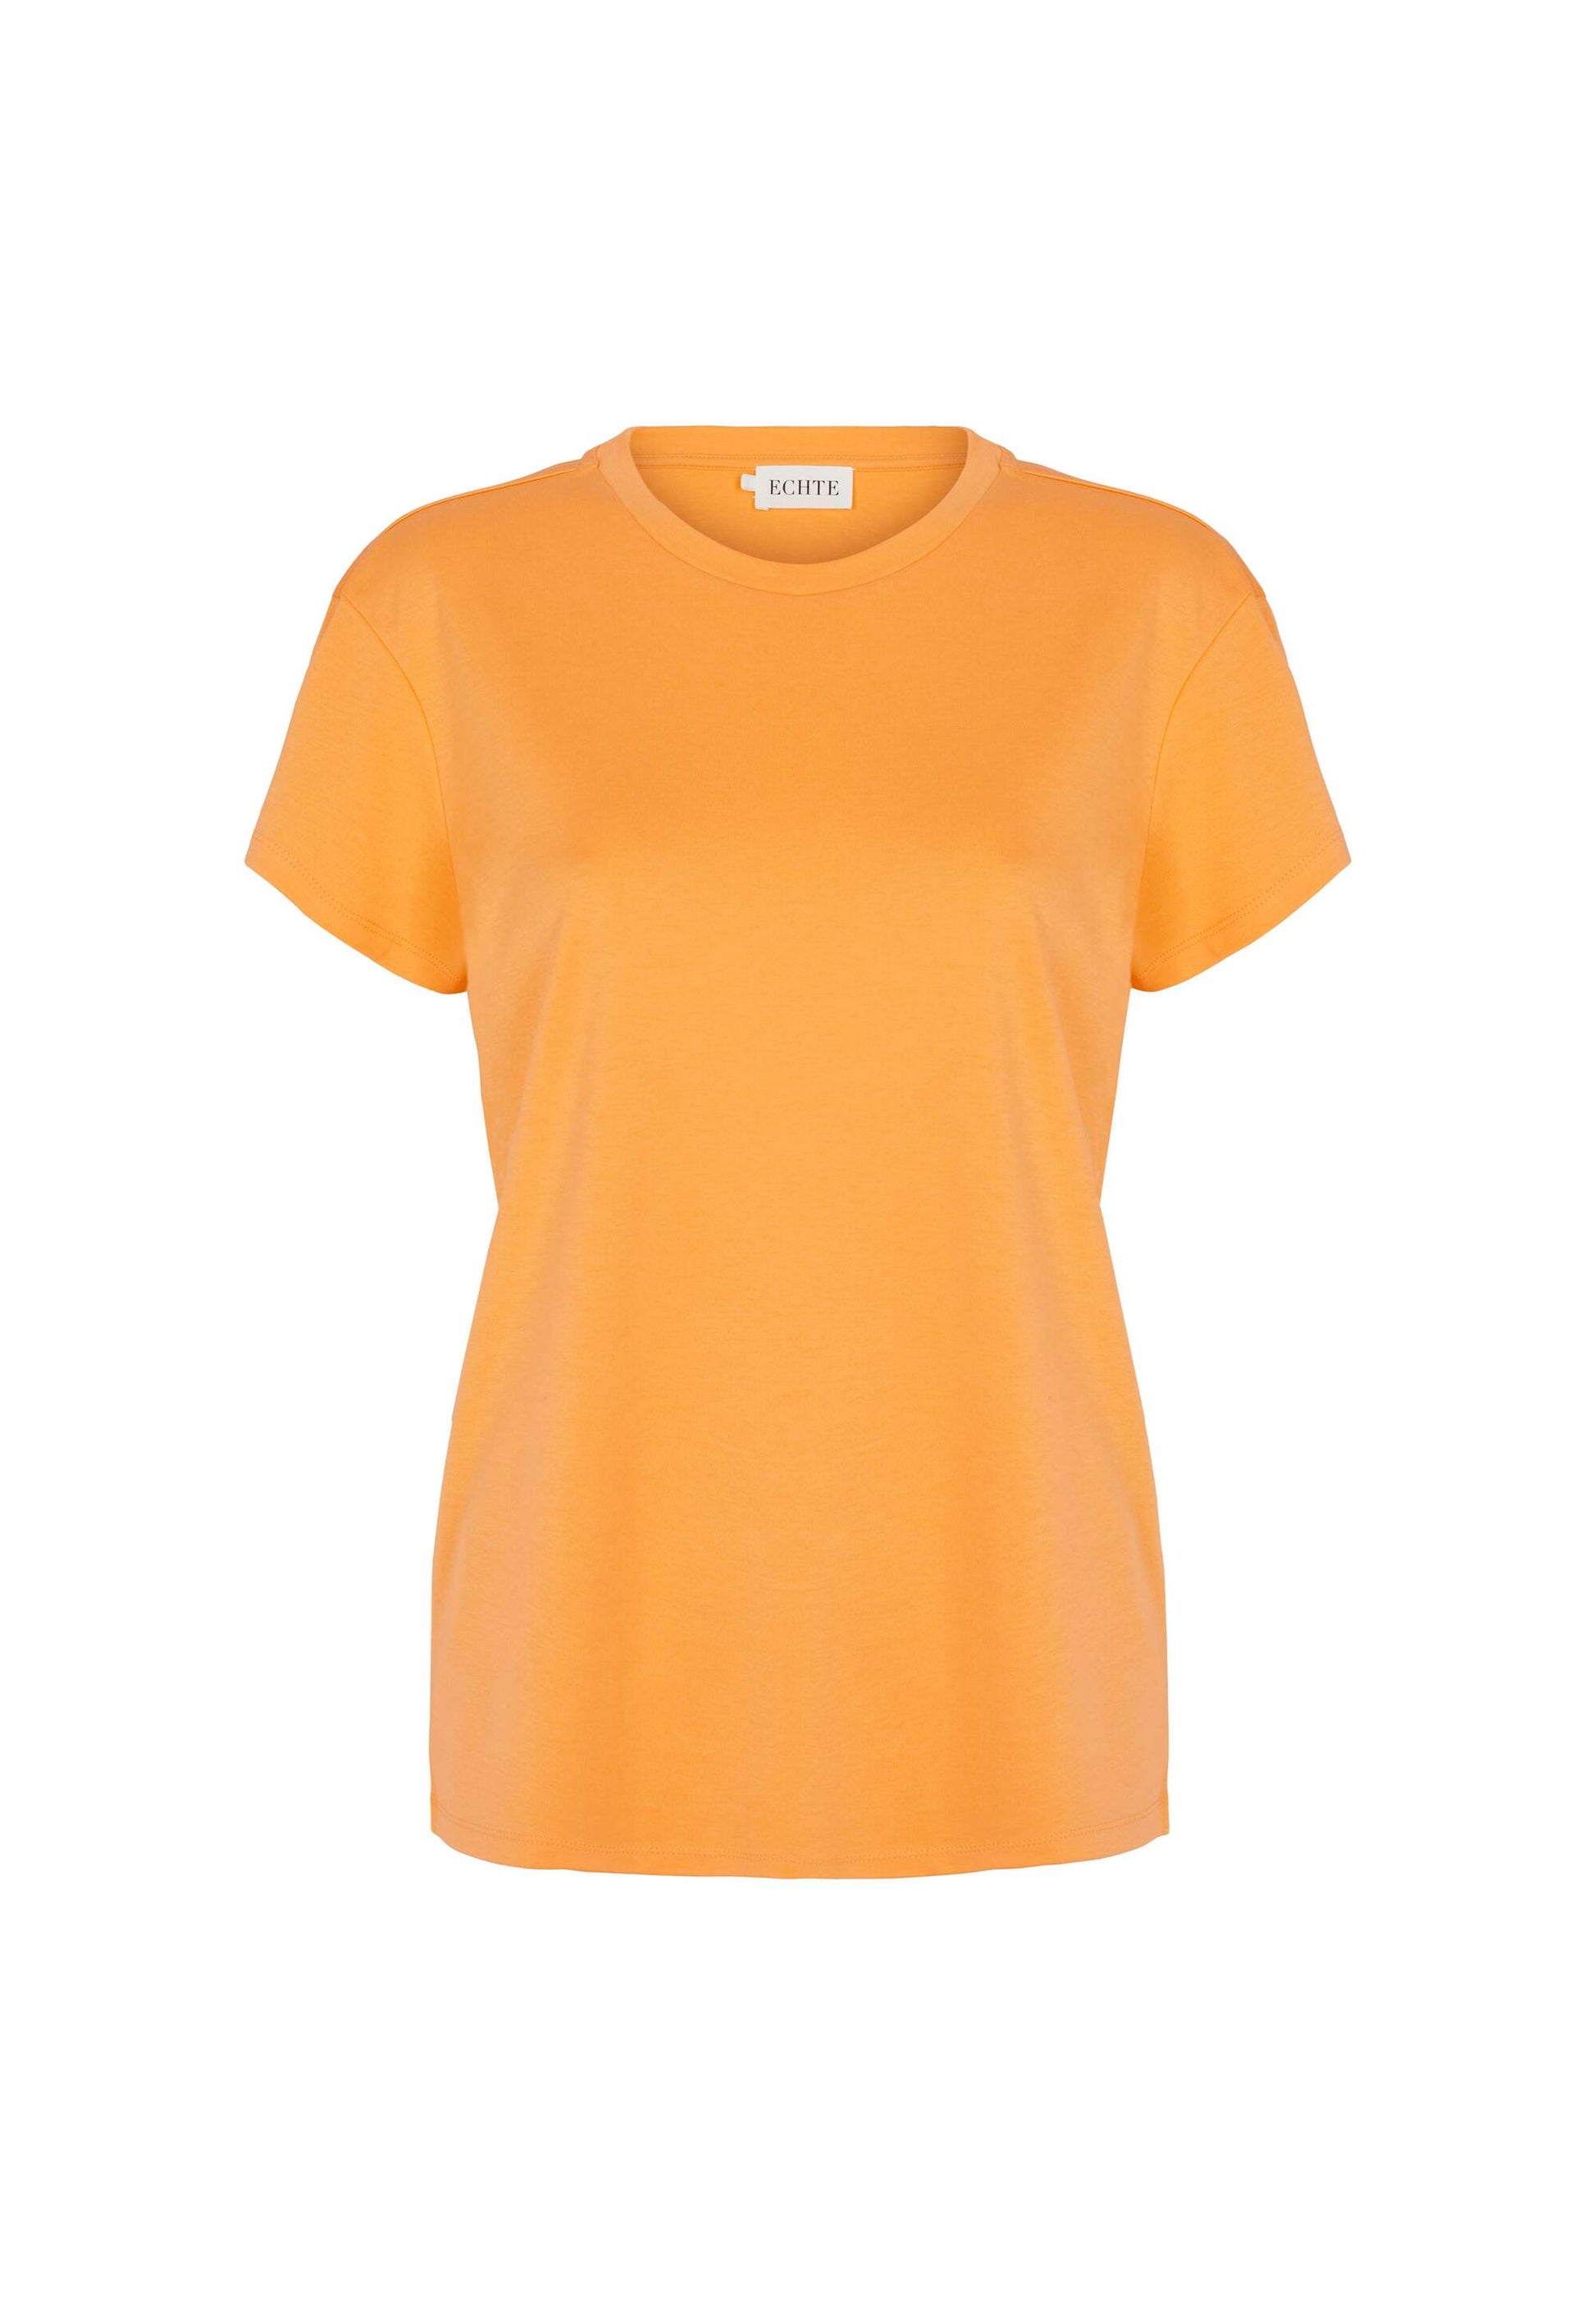 ECHTE SS T-shirt, T-shirts T-Shirts 01633 Cantaloupe